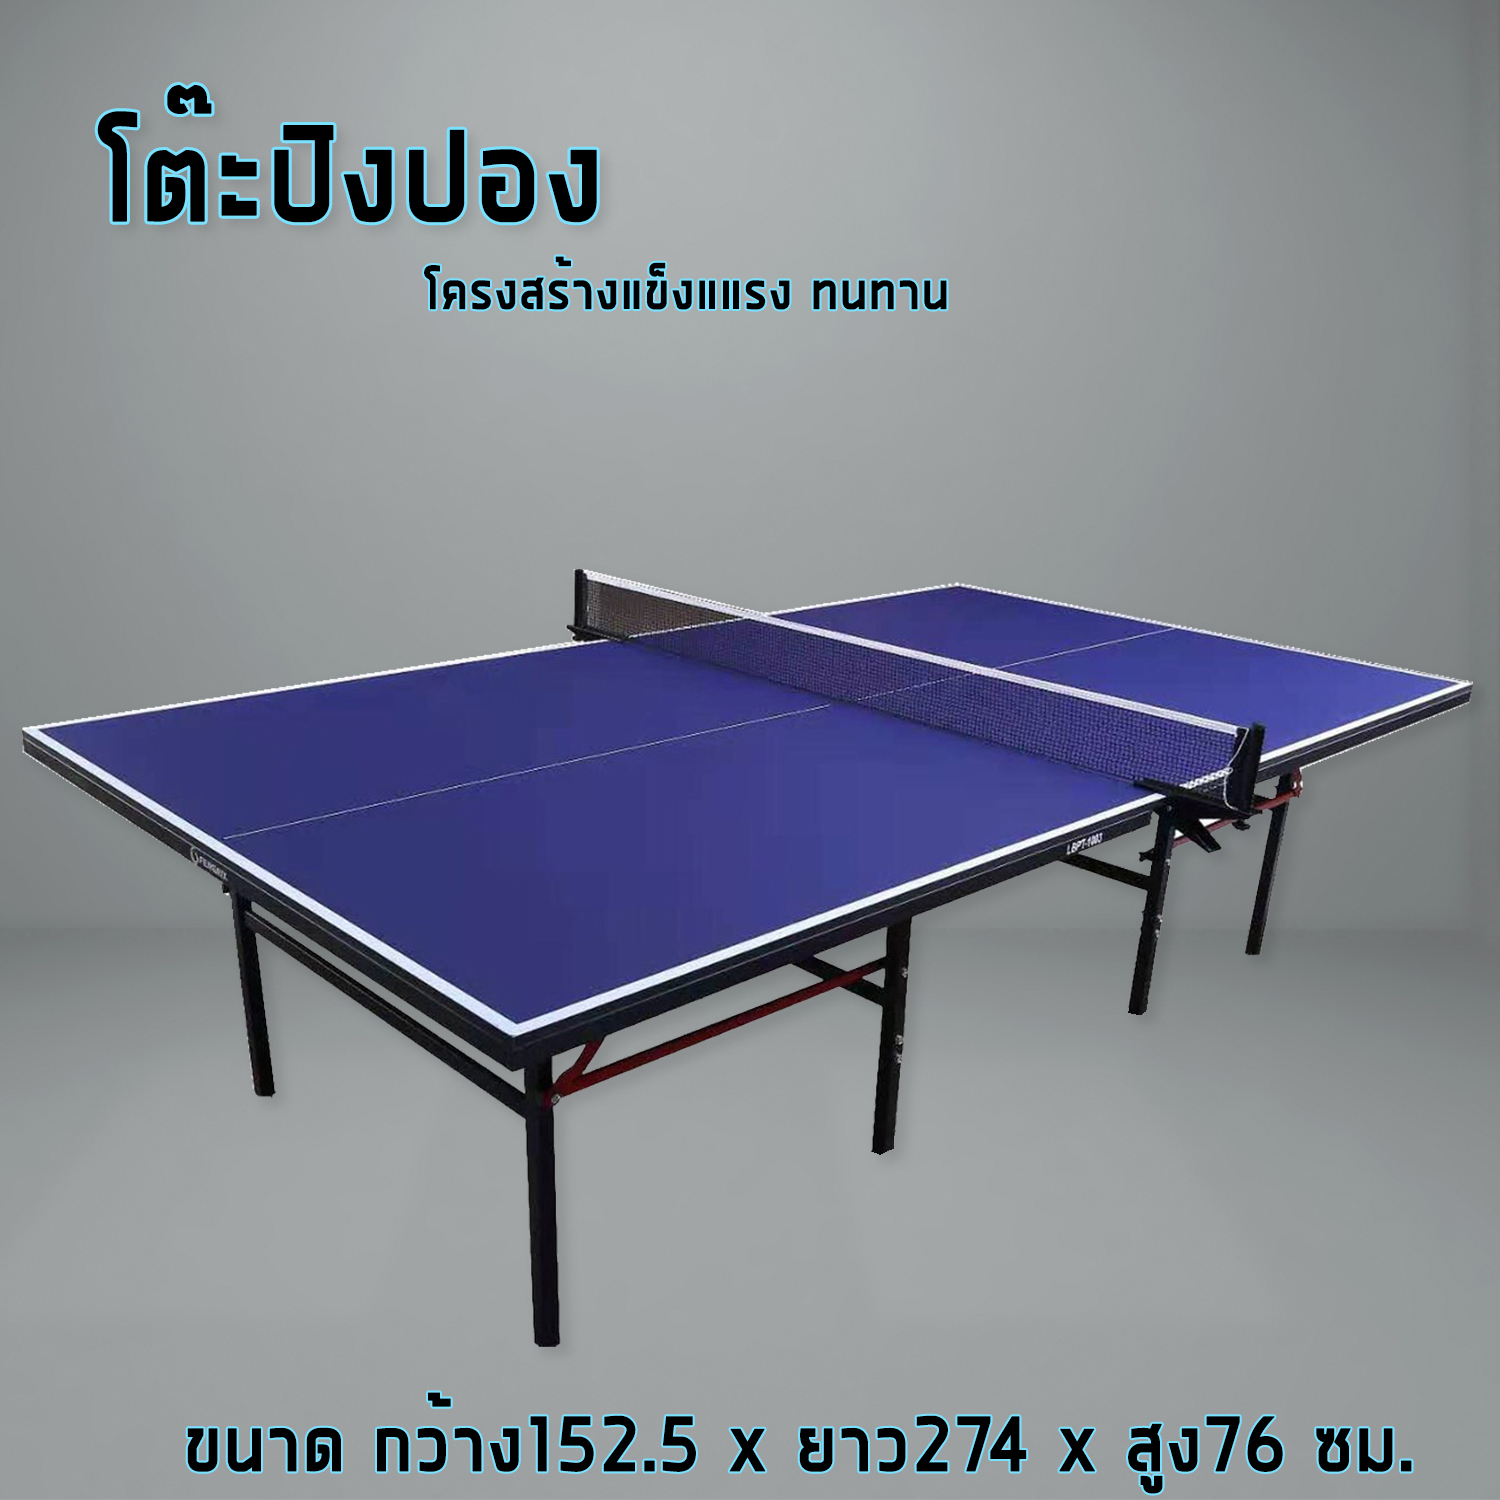 เกี่ยวกับ โต๊ะปิงปอง  โต๊ะปิงปองมาตรฐานแข่งขัน Table Tennis Table